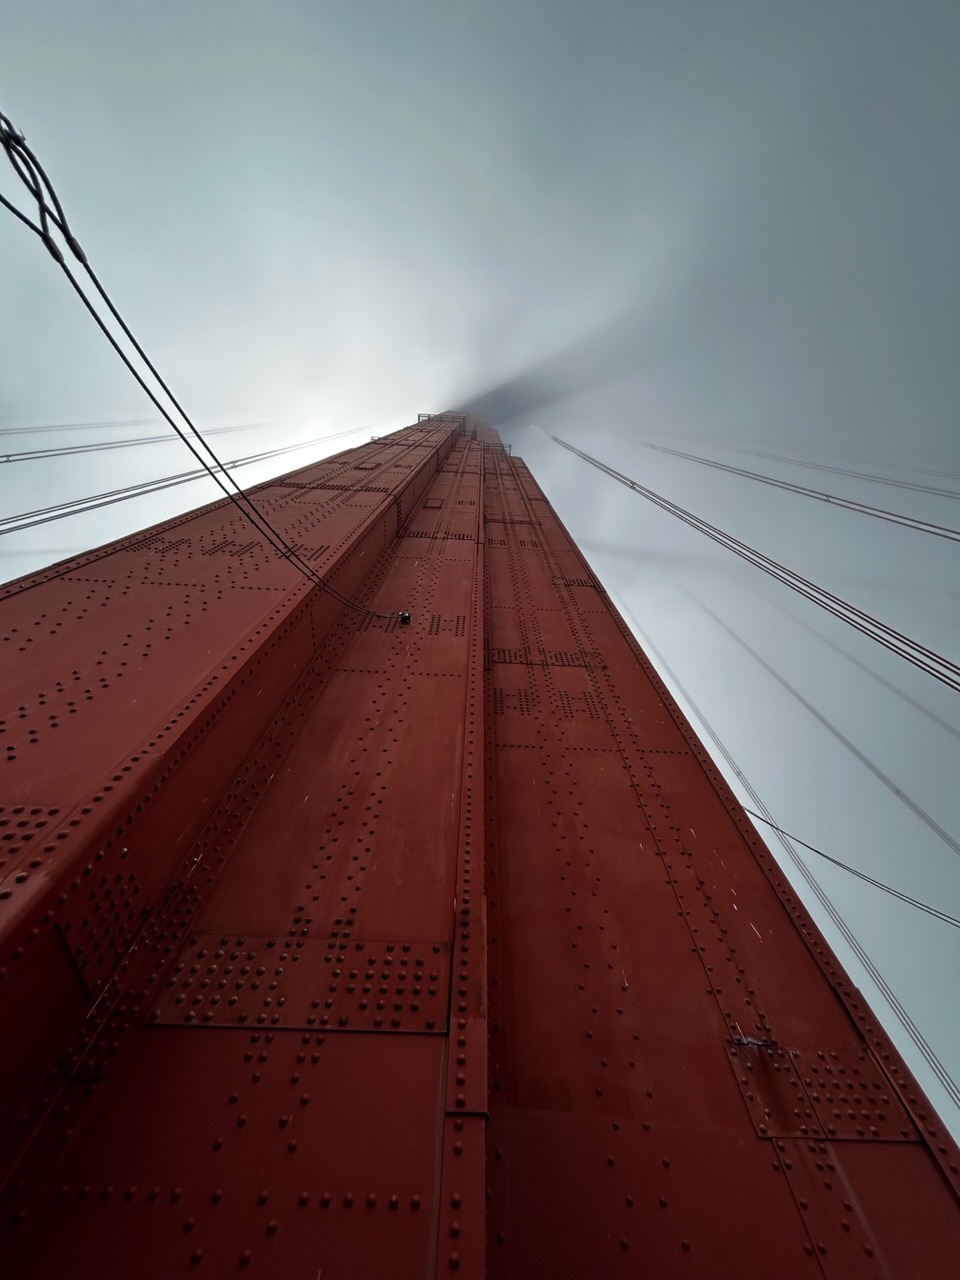 The Golden Gate Bridge inside the fog...